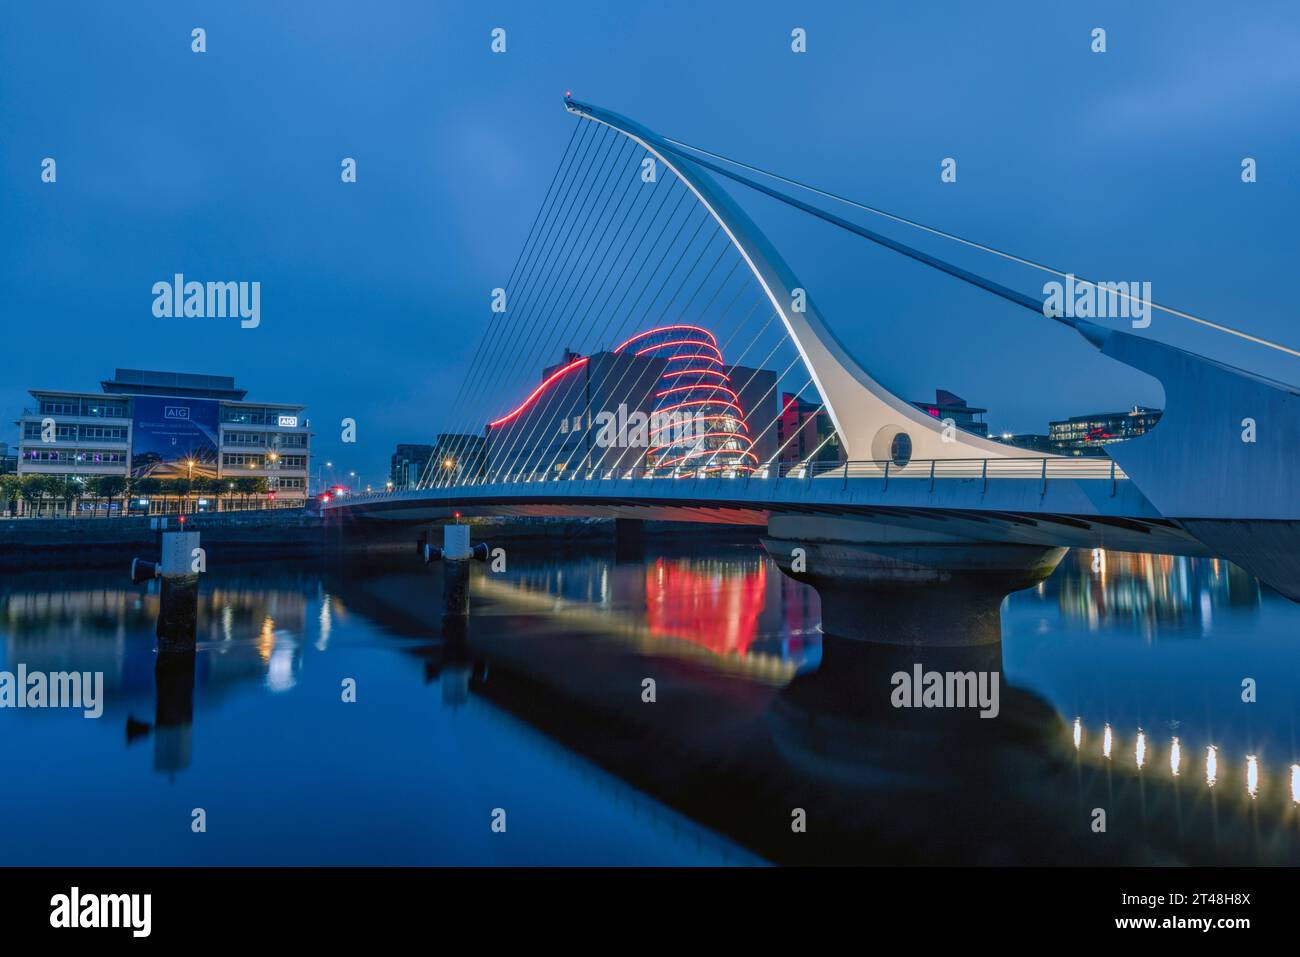 Samuel Beckett Bridge, Dublino, è un iconico ponte sospeso strallato con un design elegante e asimmetrico che ruota di 90 gradi per consentire il traffico fluviale. Foto Stock